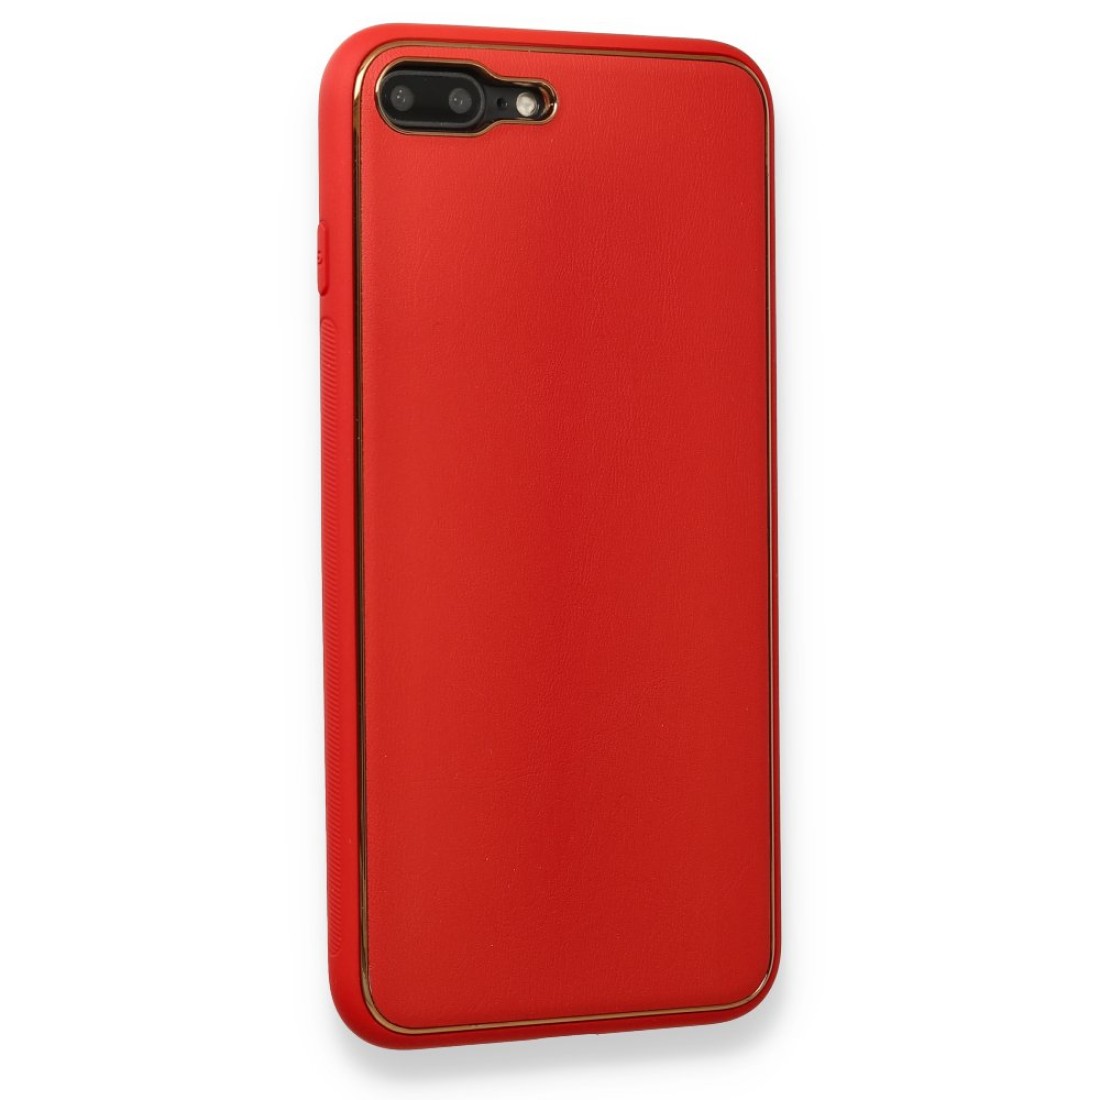 Apple iPhone 8 Plus Kılıf Coco Deri Silikon Kapak - Kırmızı